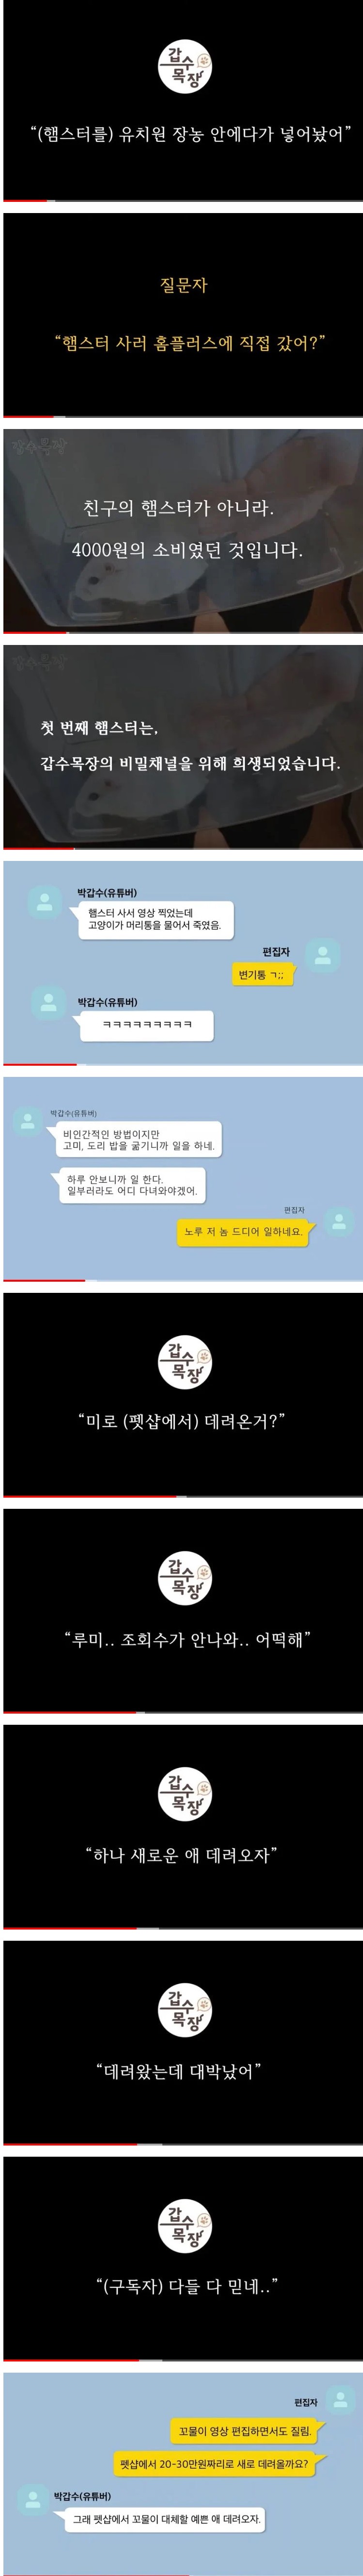 구독자 50만 고양이 유튜버 <갑수목장> 학대, 주작 논란